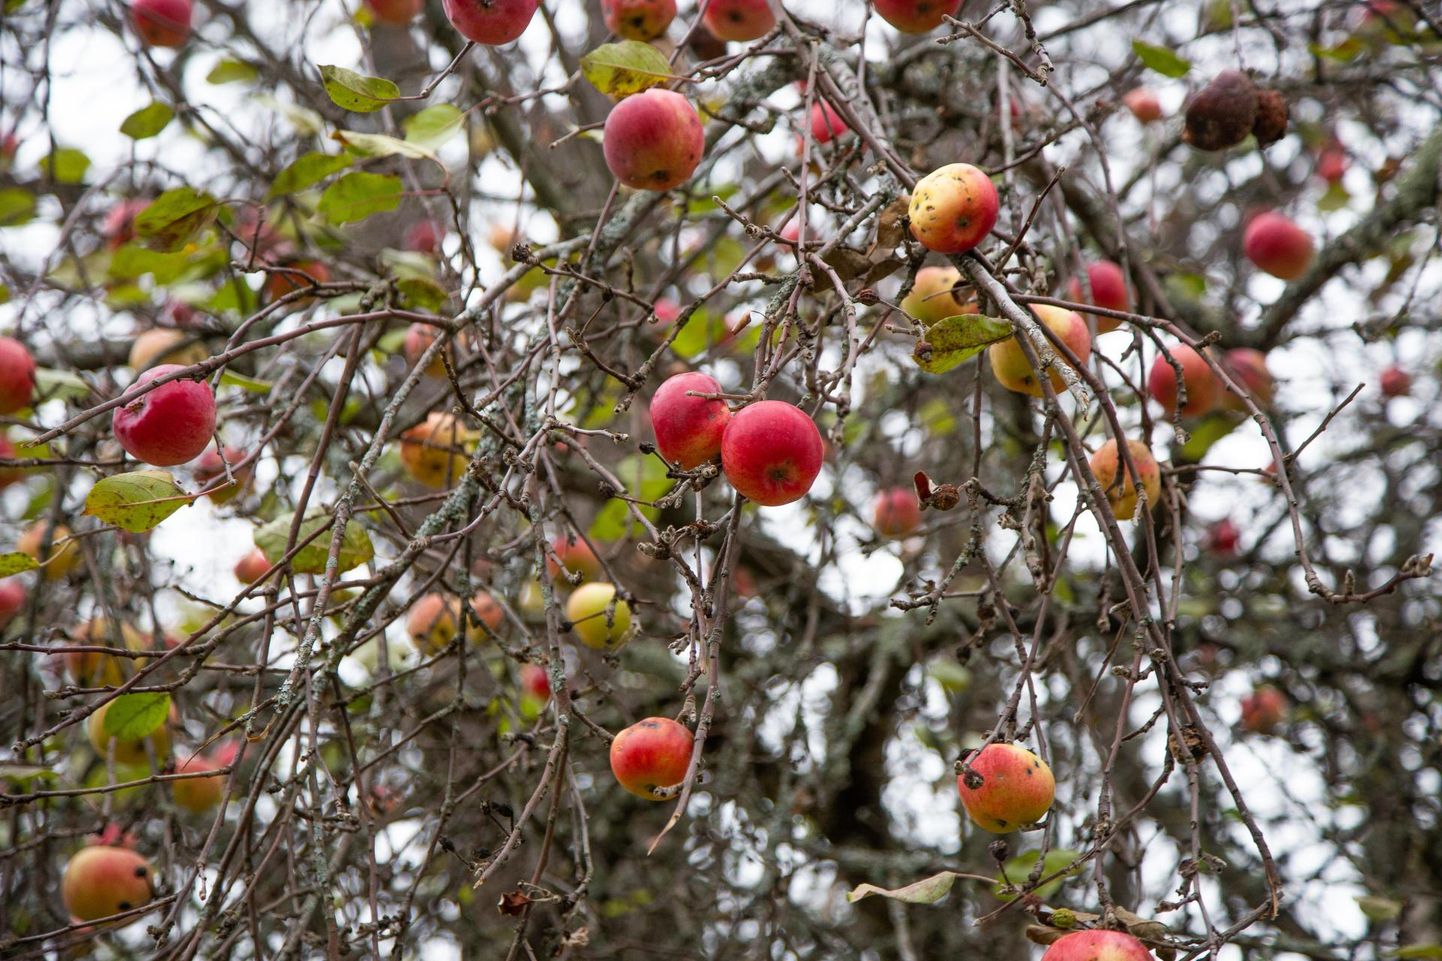 Mahakukkunud õunad võib teha näiteks kompostiks, kuid eriti linnas ei tohiks neid ladustada metsa- või pargipuude alla.